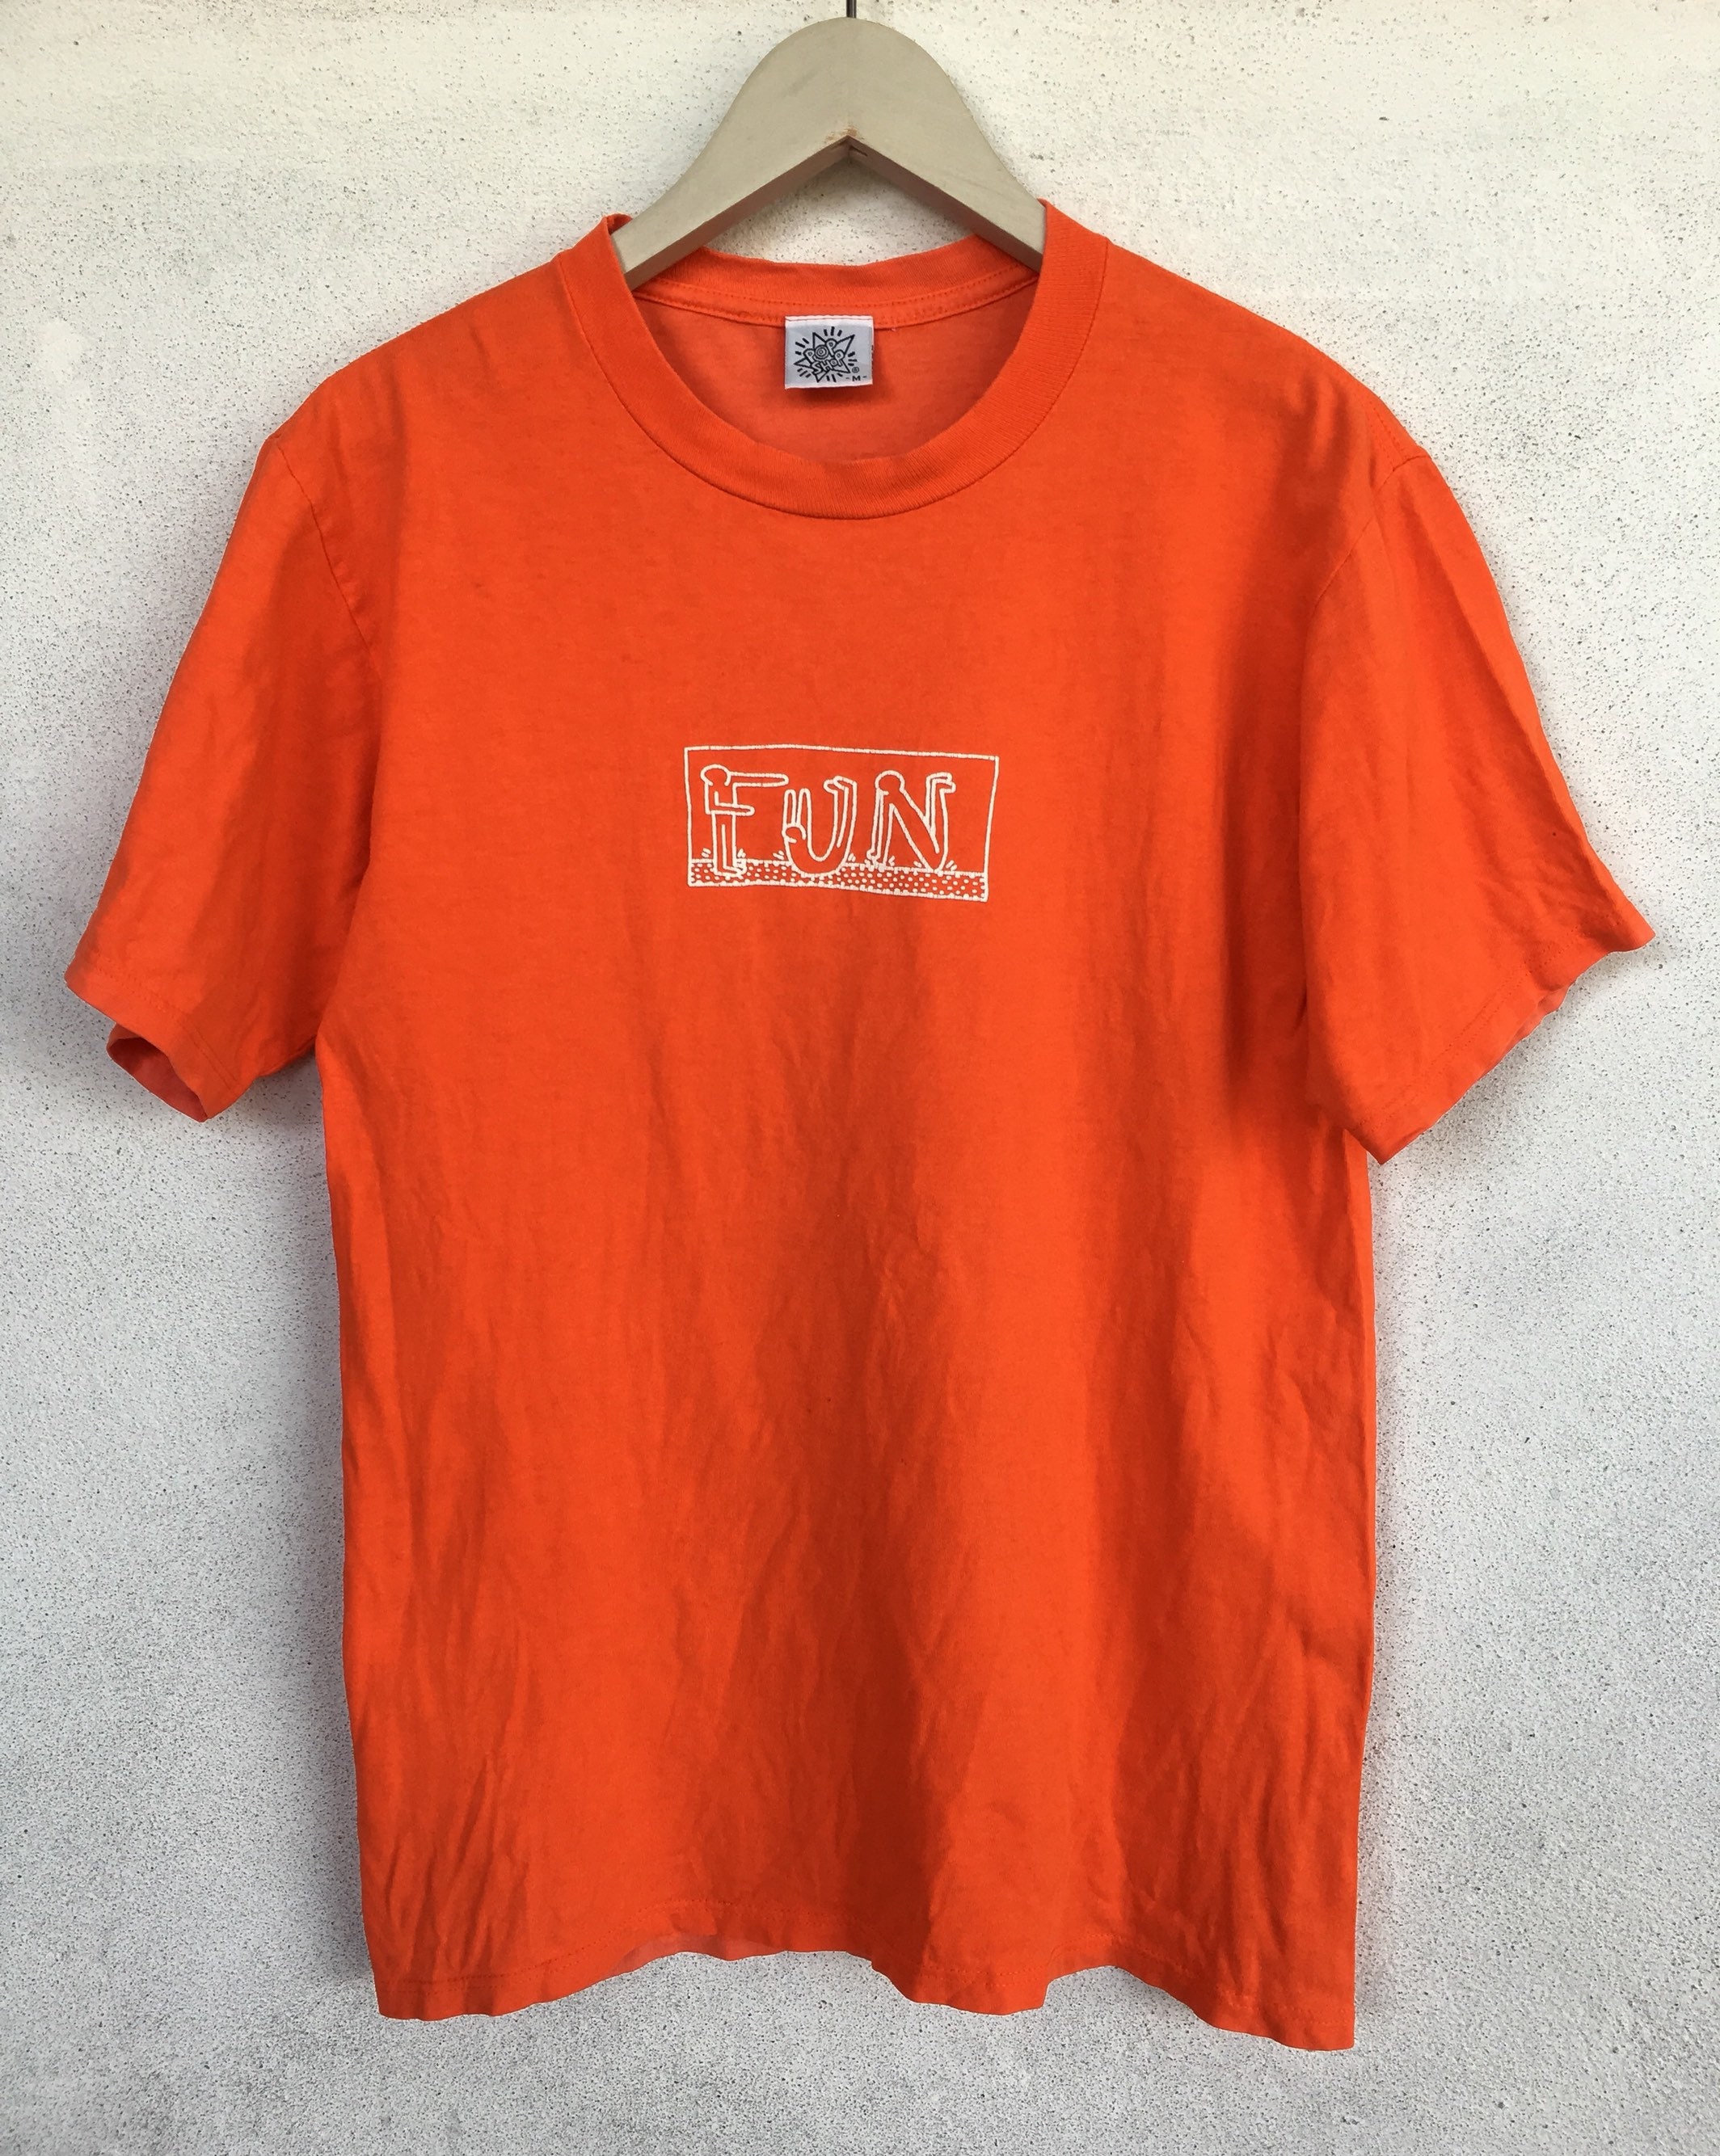 Vintage 90s Keith Haring K.haring Pop Shop FUN T Shirt M - Etsy UK